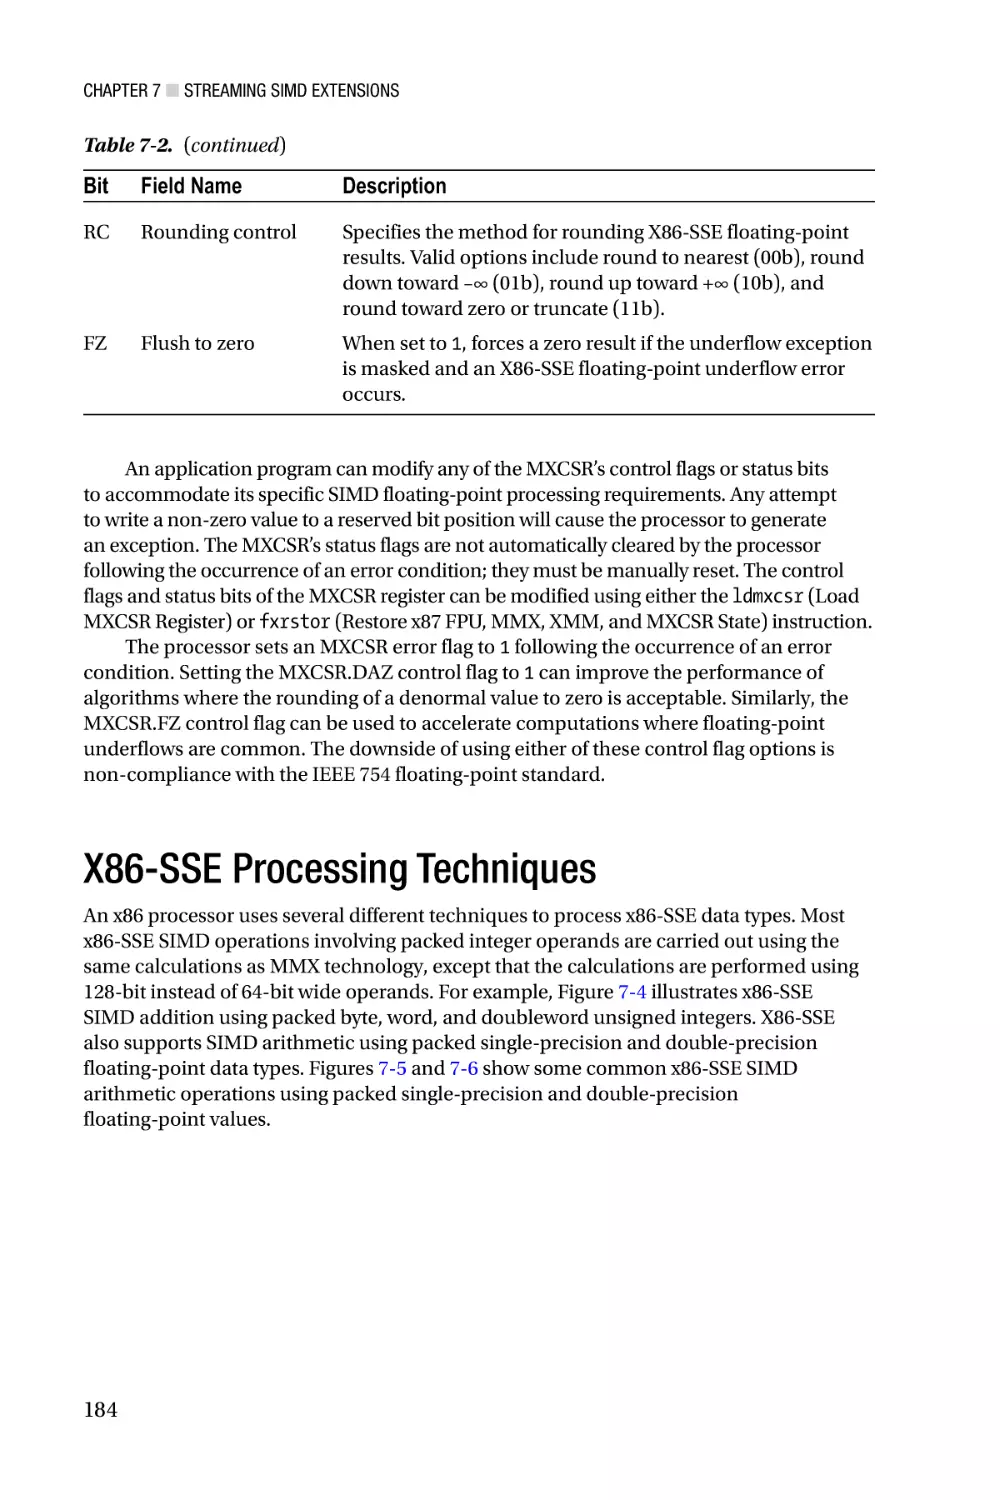 X86-SSE Processing Techniques